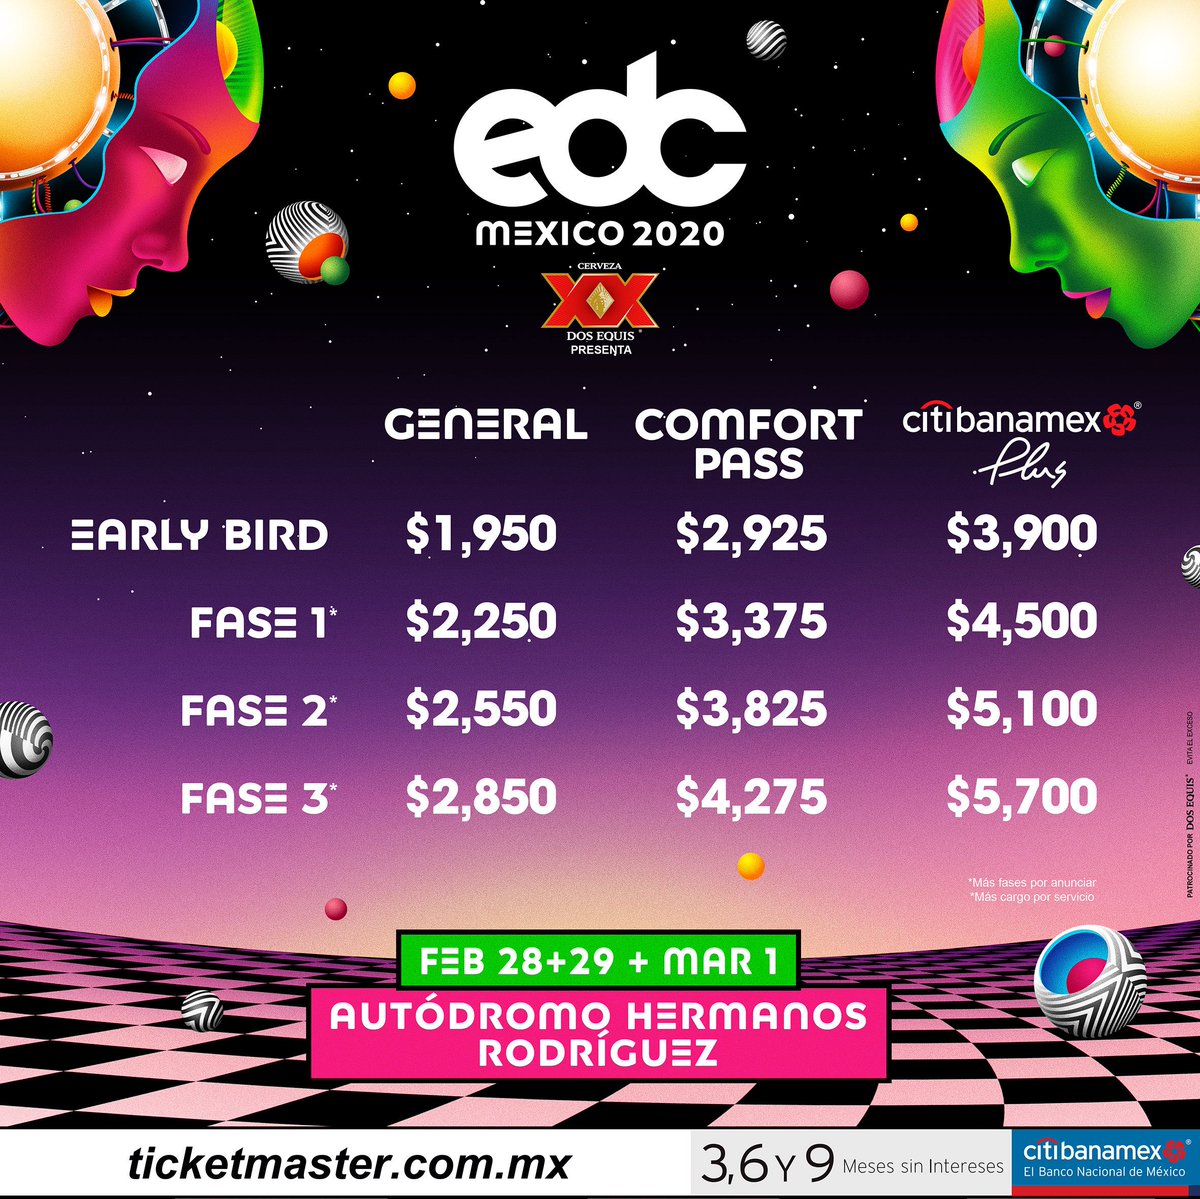 EDC Mexico 2020 